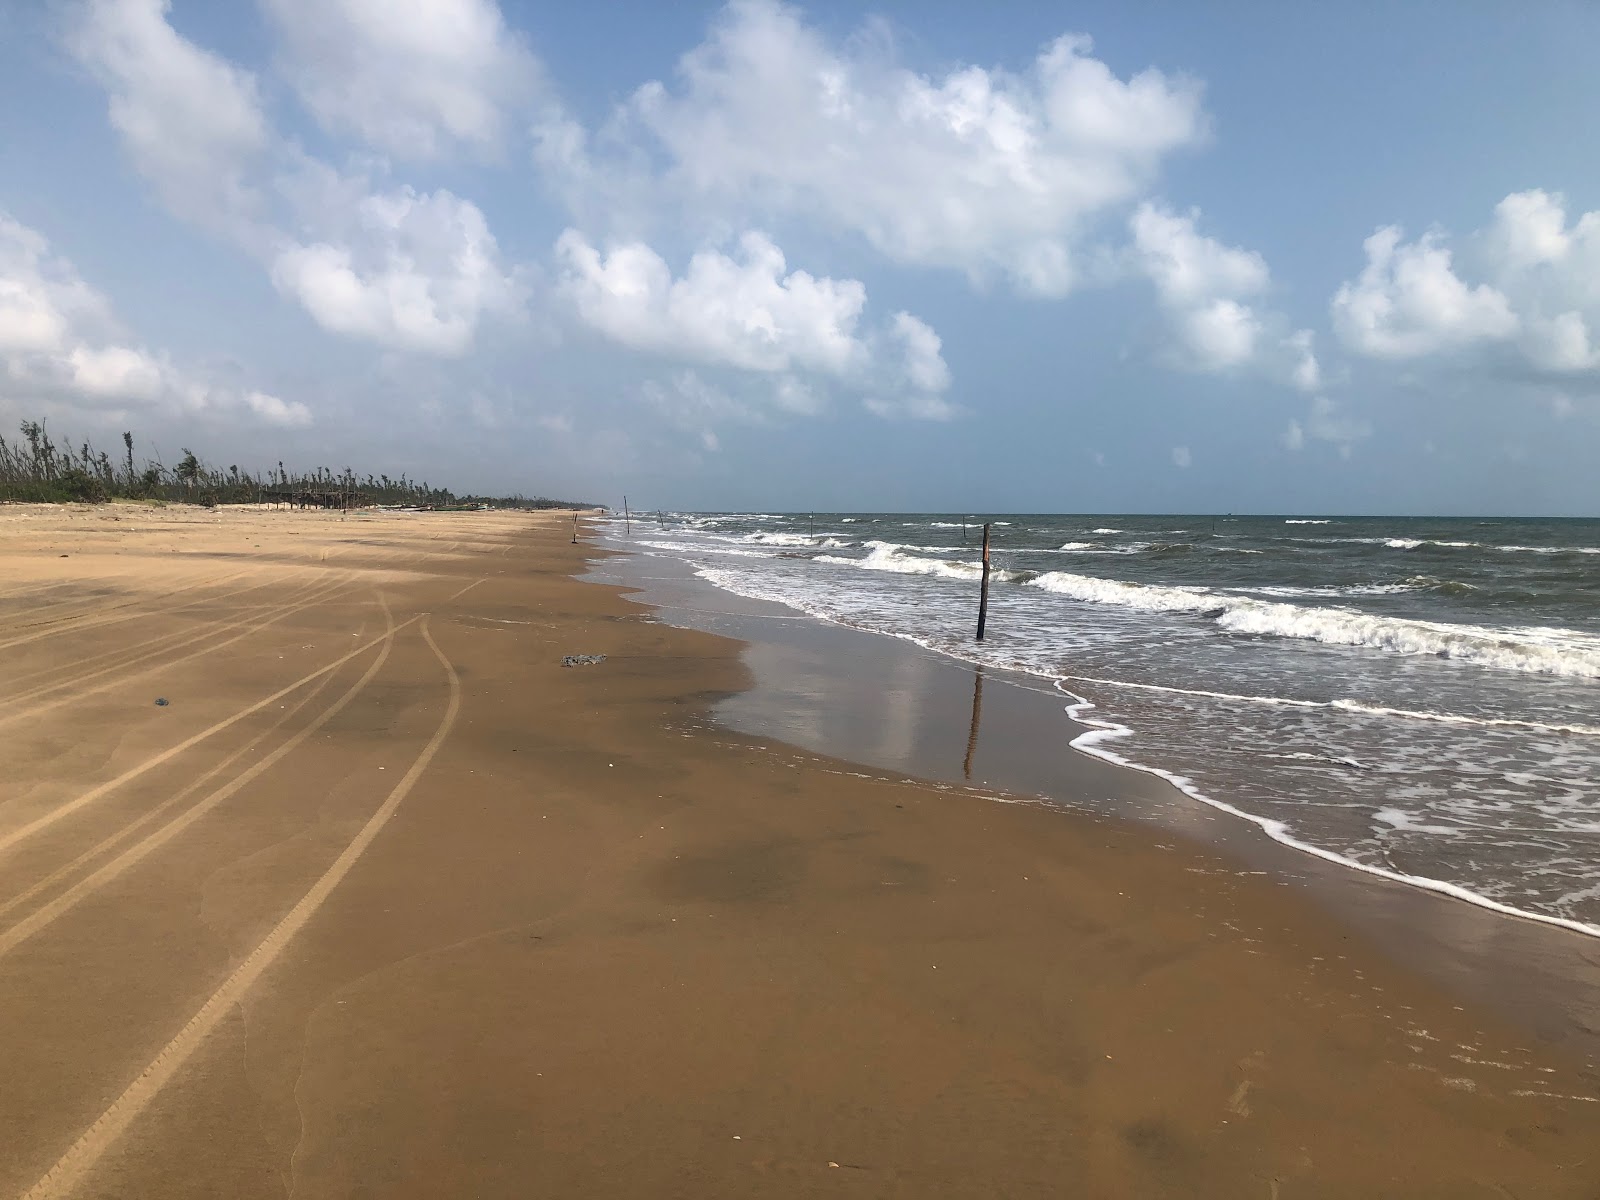 Kameswaram Beach'in fotoğrafı parlak kum yüzey ile